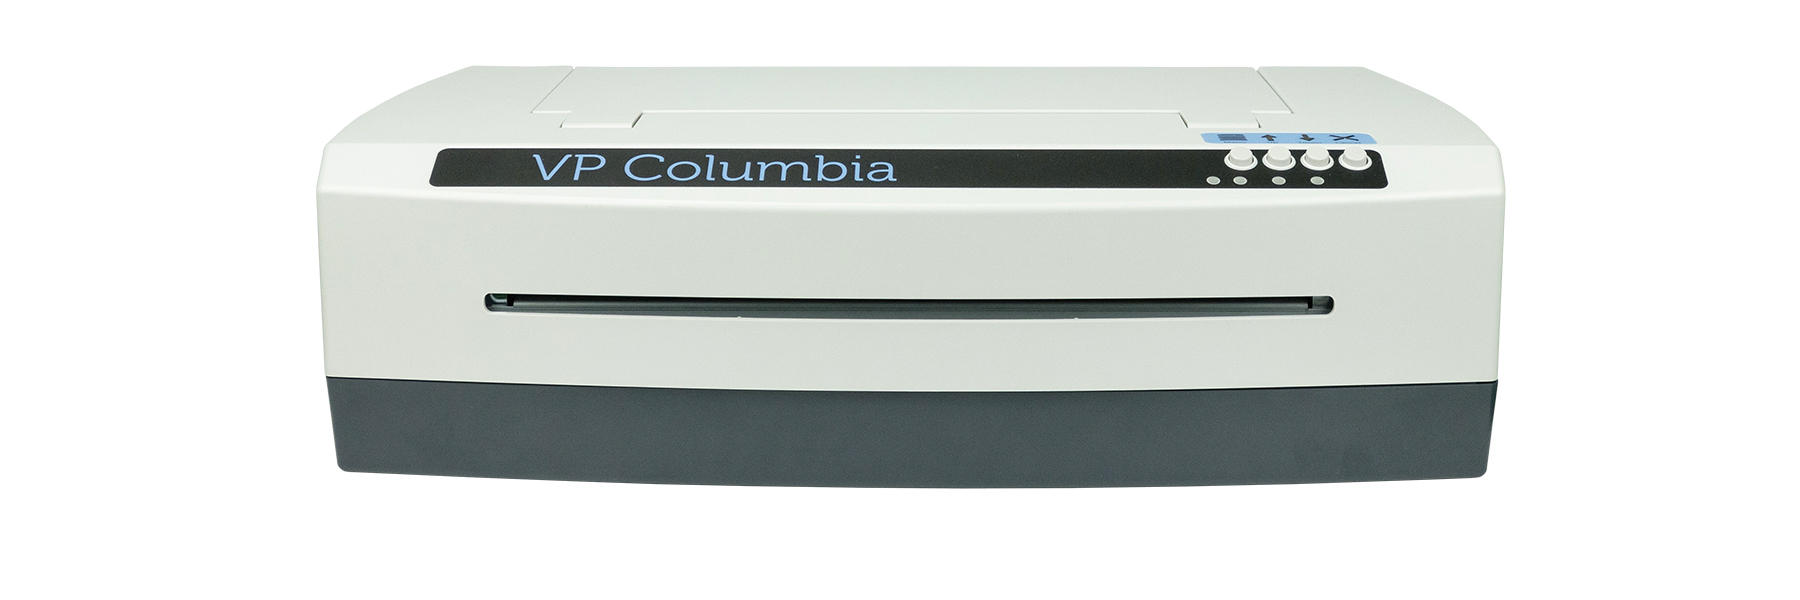 Abbildung des Viewplus Columbia